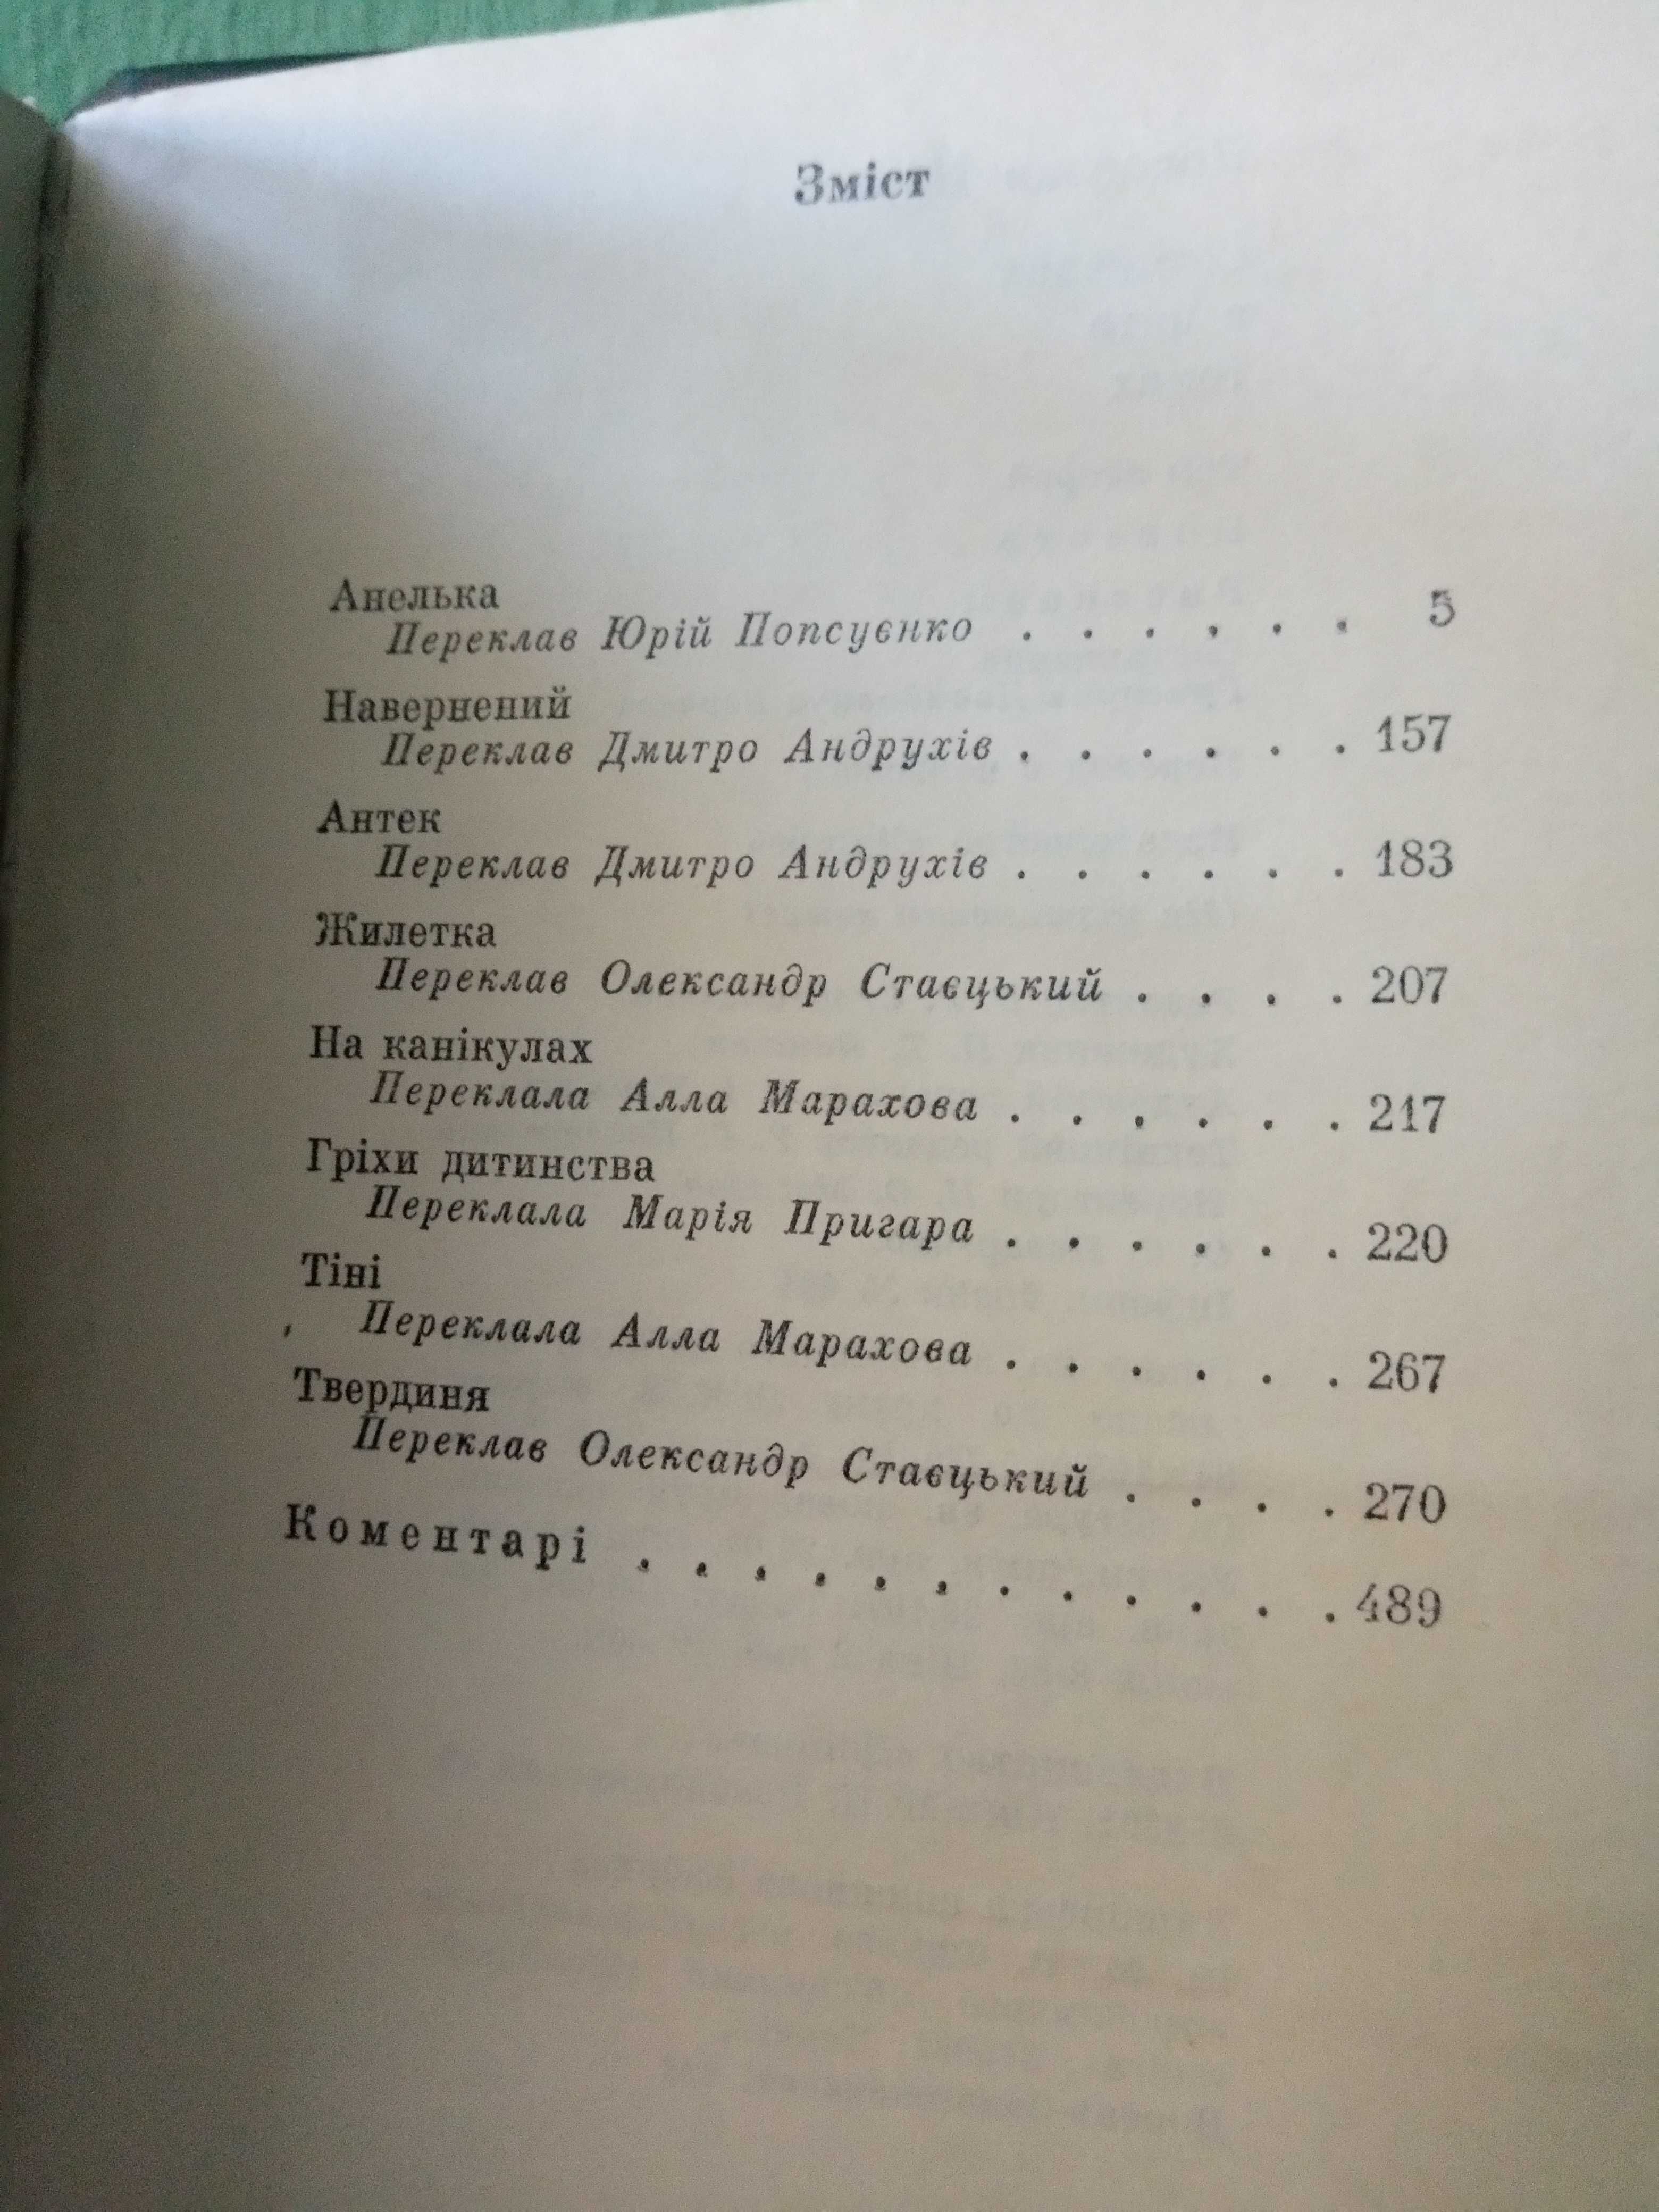 Сборник польского автора Б.Прус 5 томов 1979г